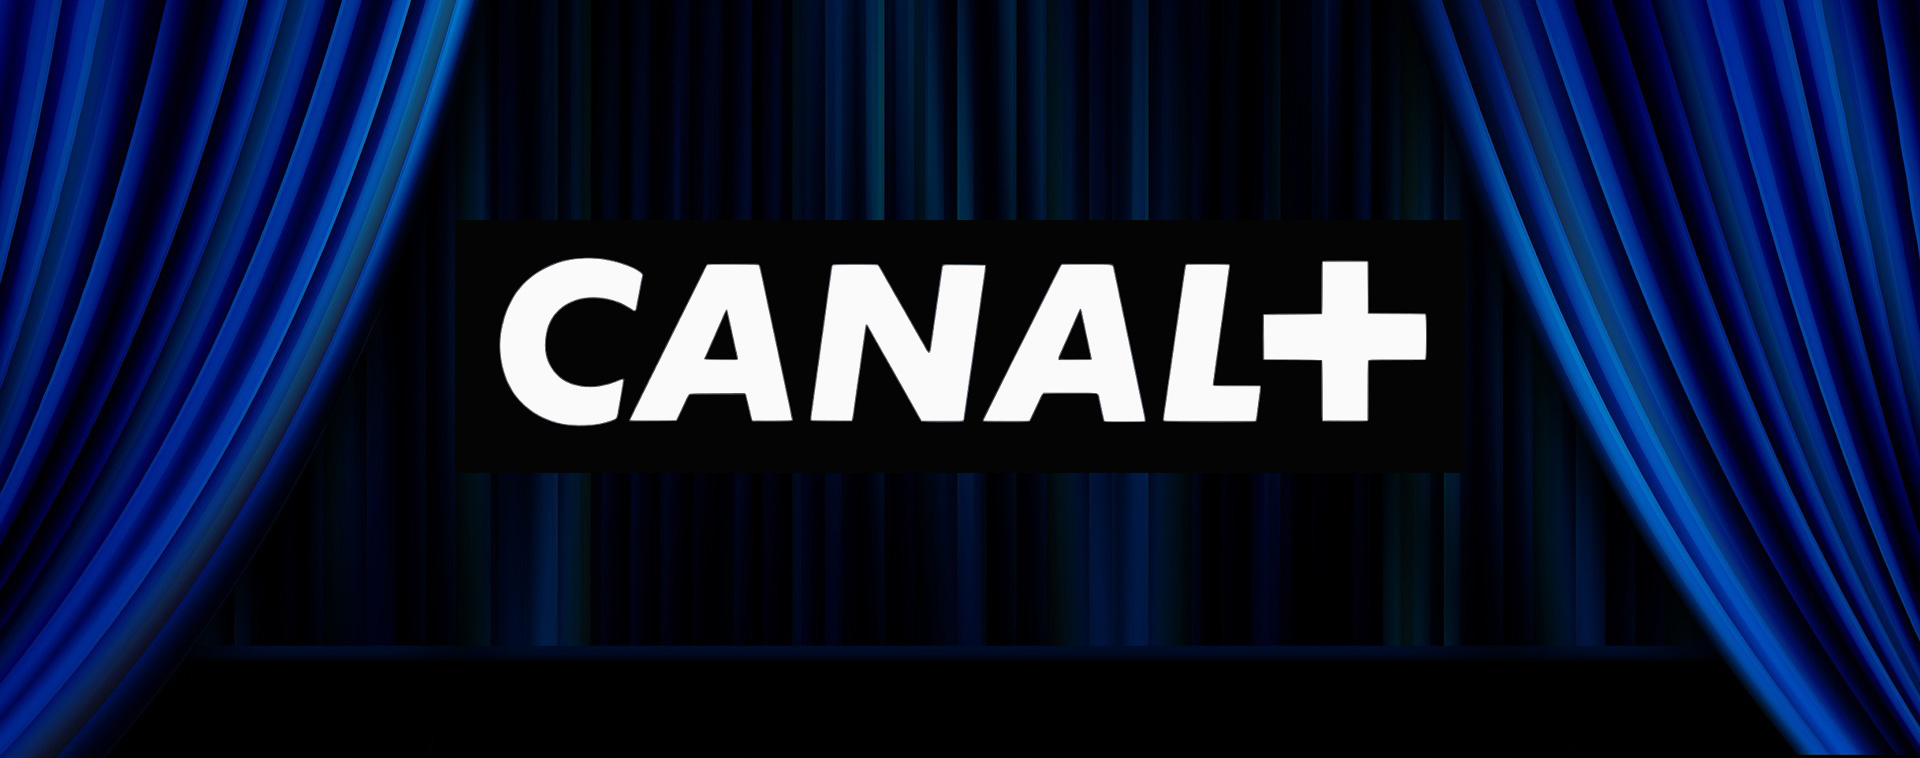 Canal+ Extra przed startem - znana oferta kanałów